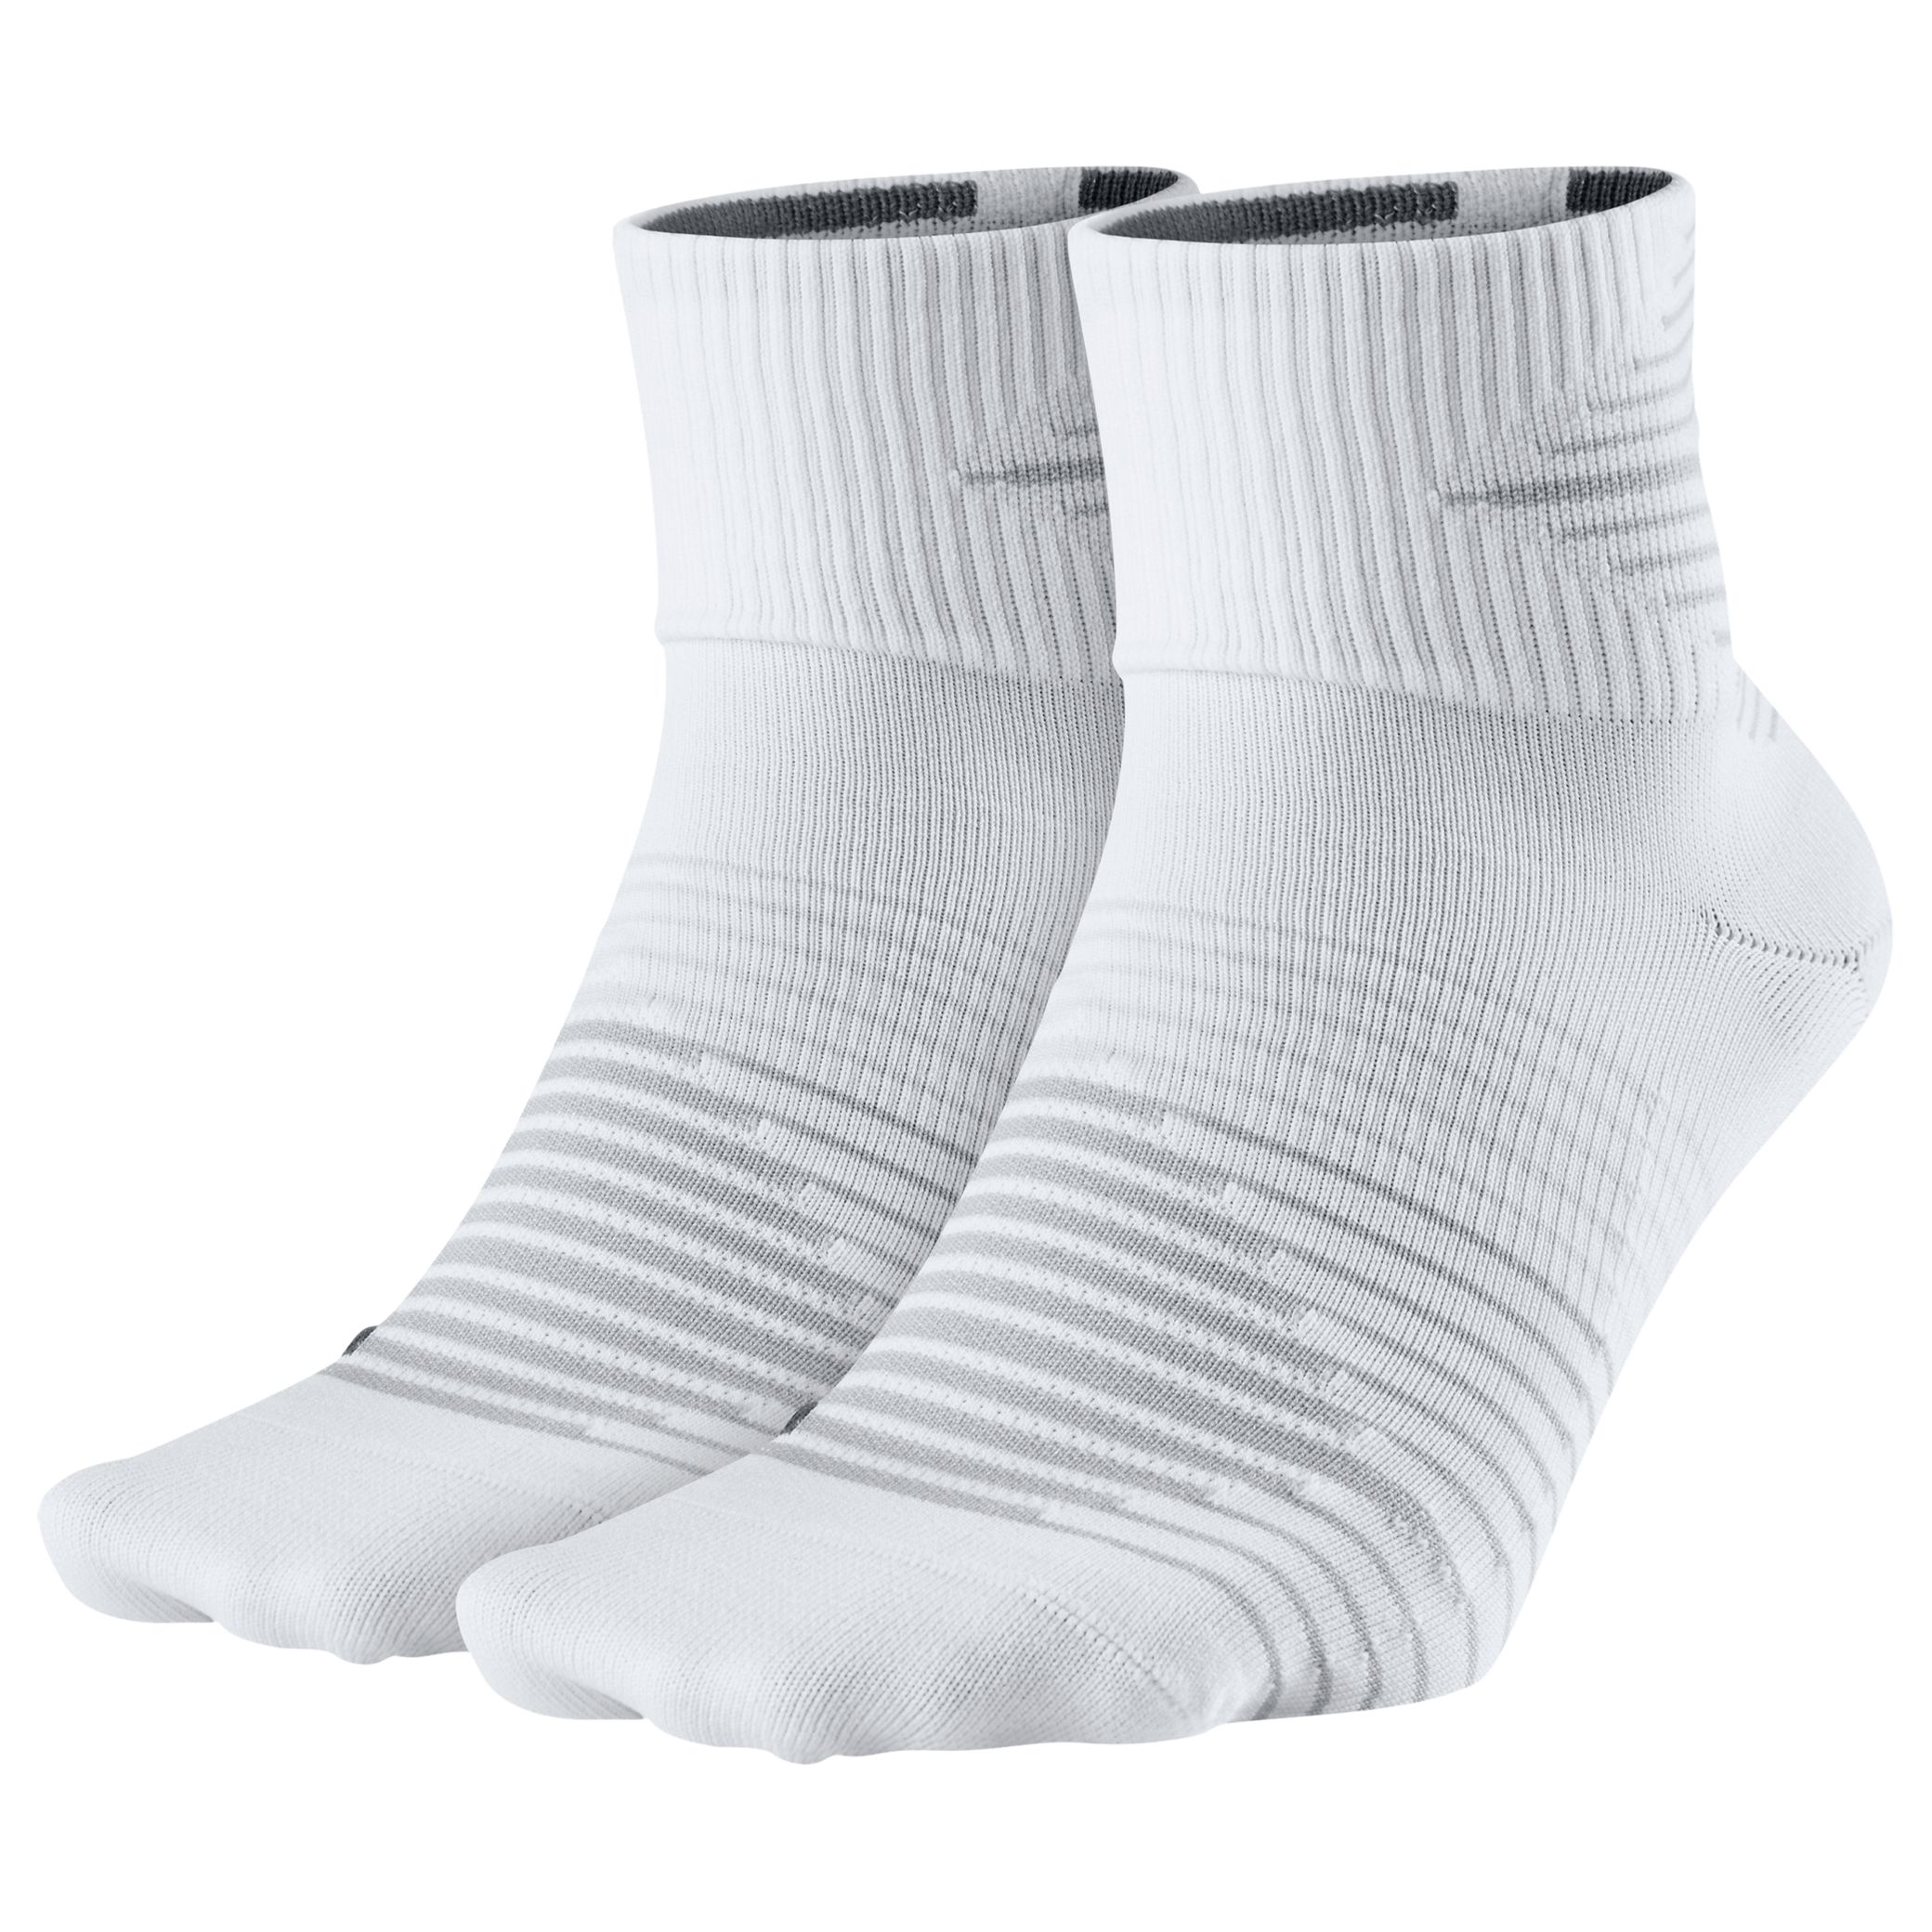 Nike Performance Lightweight Quarter Running Socks, Pack of 2, White/Grey